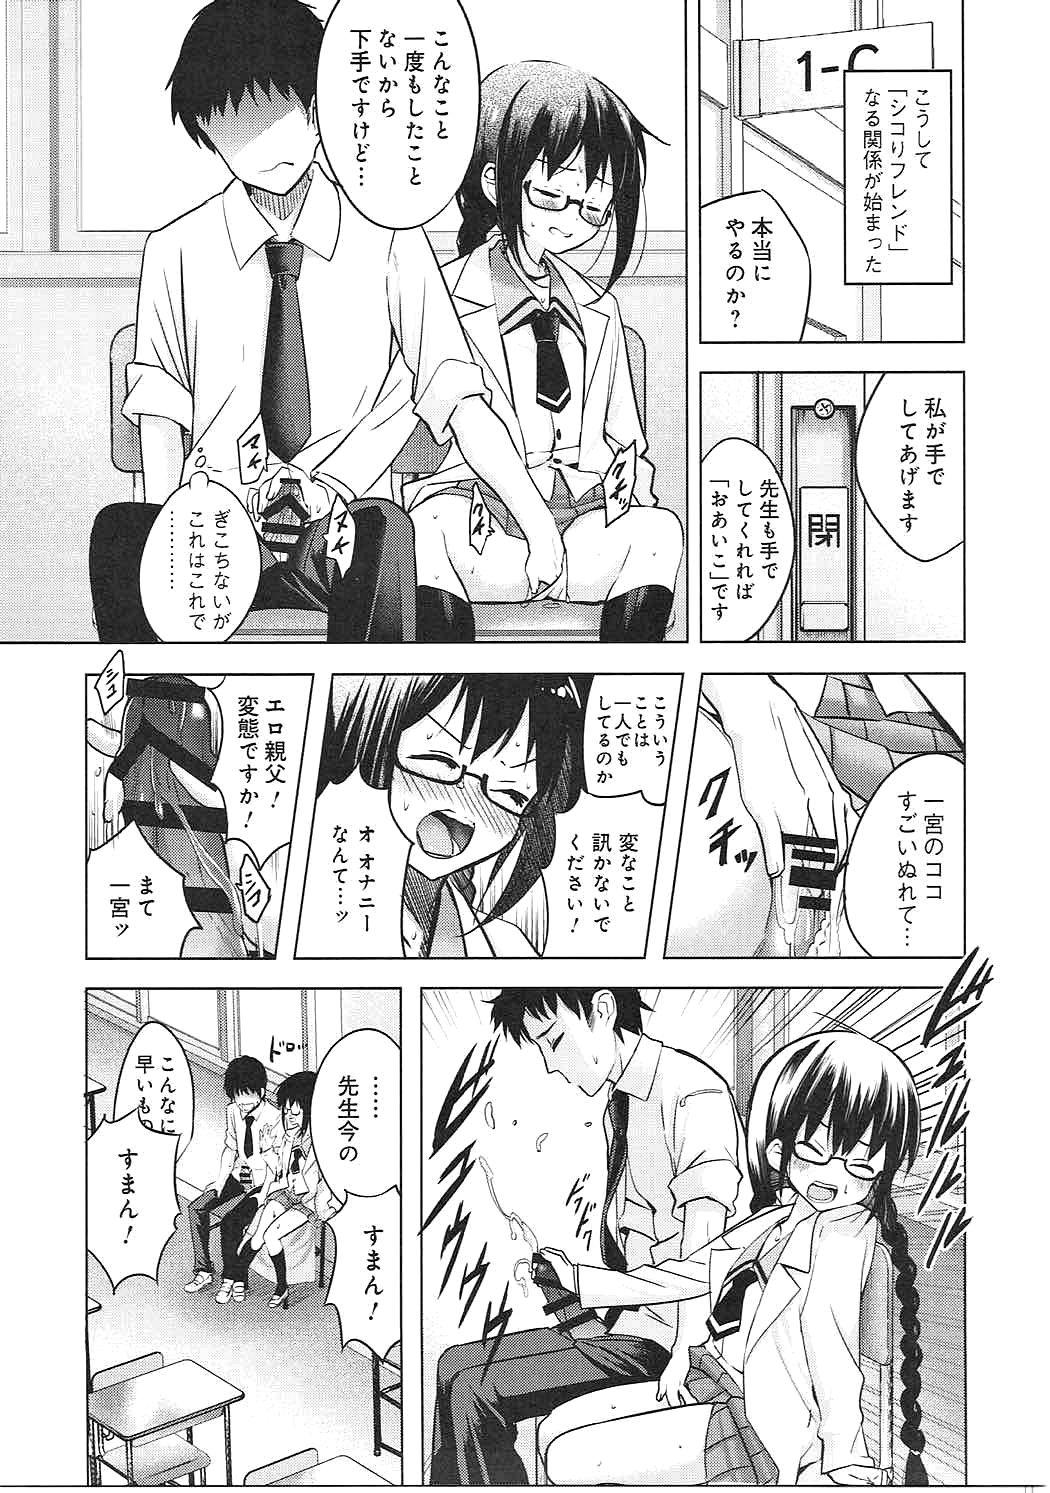 Teen Sex Watashi wa Sensei no Shikotomo desu! - Omaera zenin mendokusai Phat - Page 8